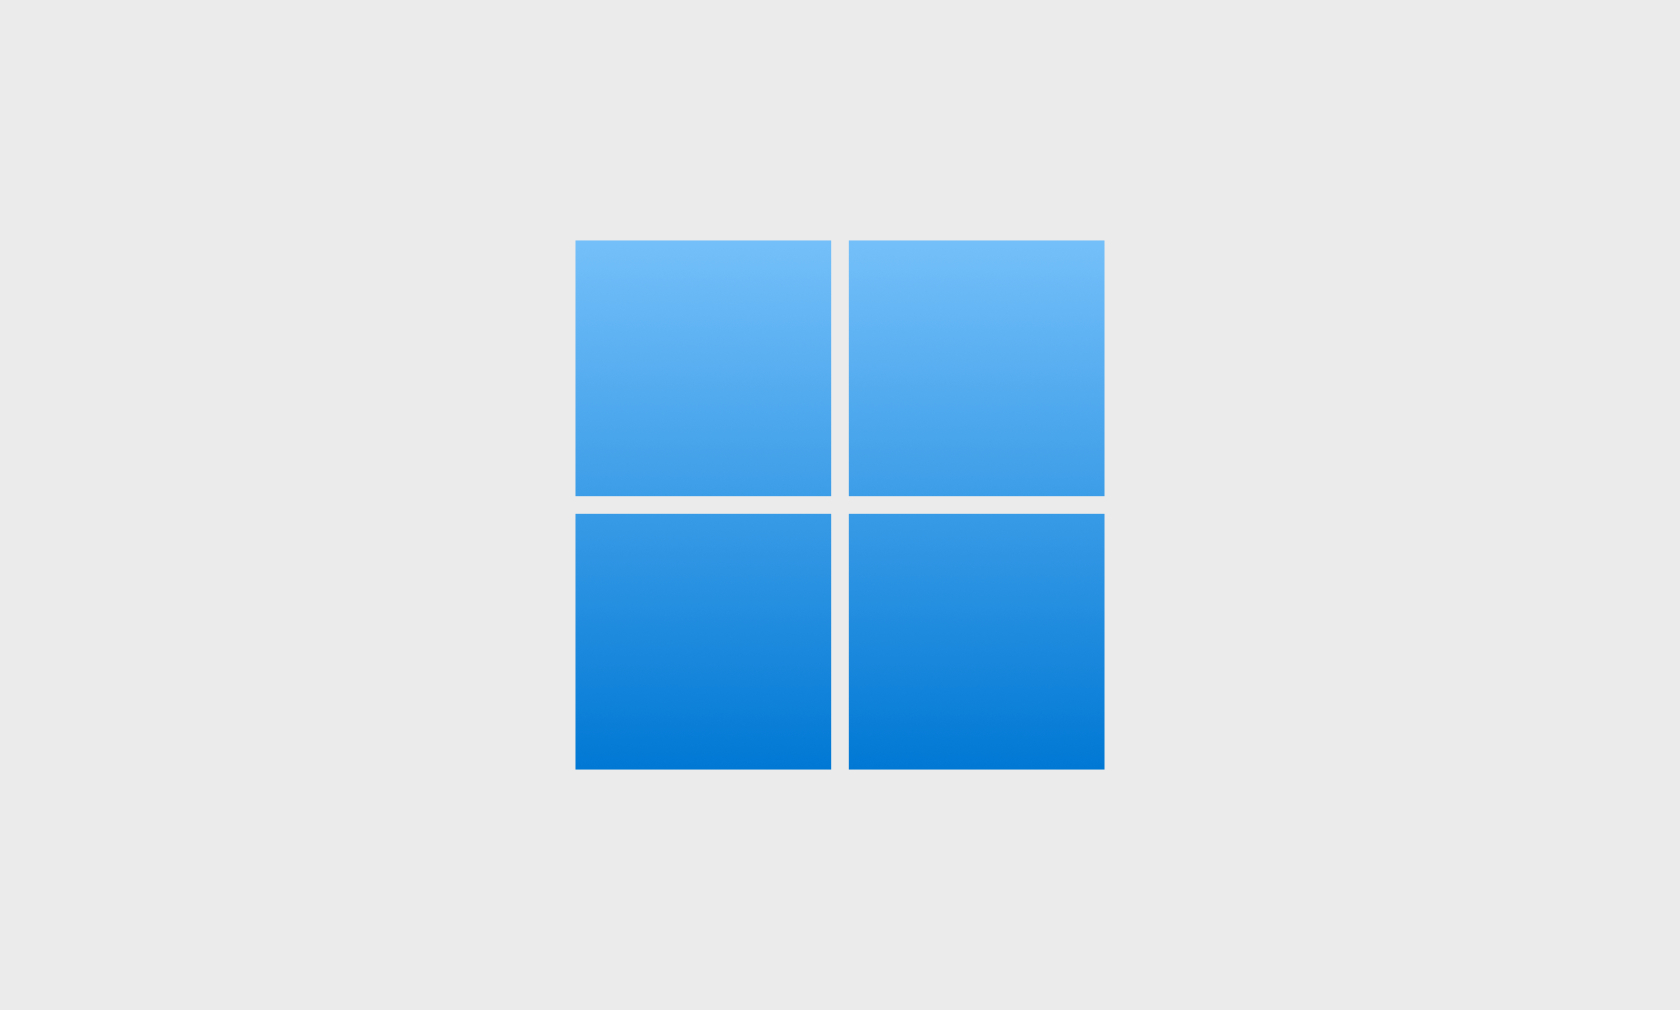 Windows 11 интересное не меняются картинки